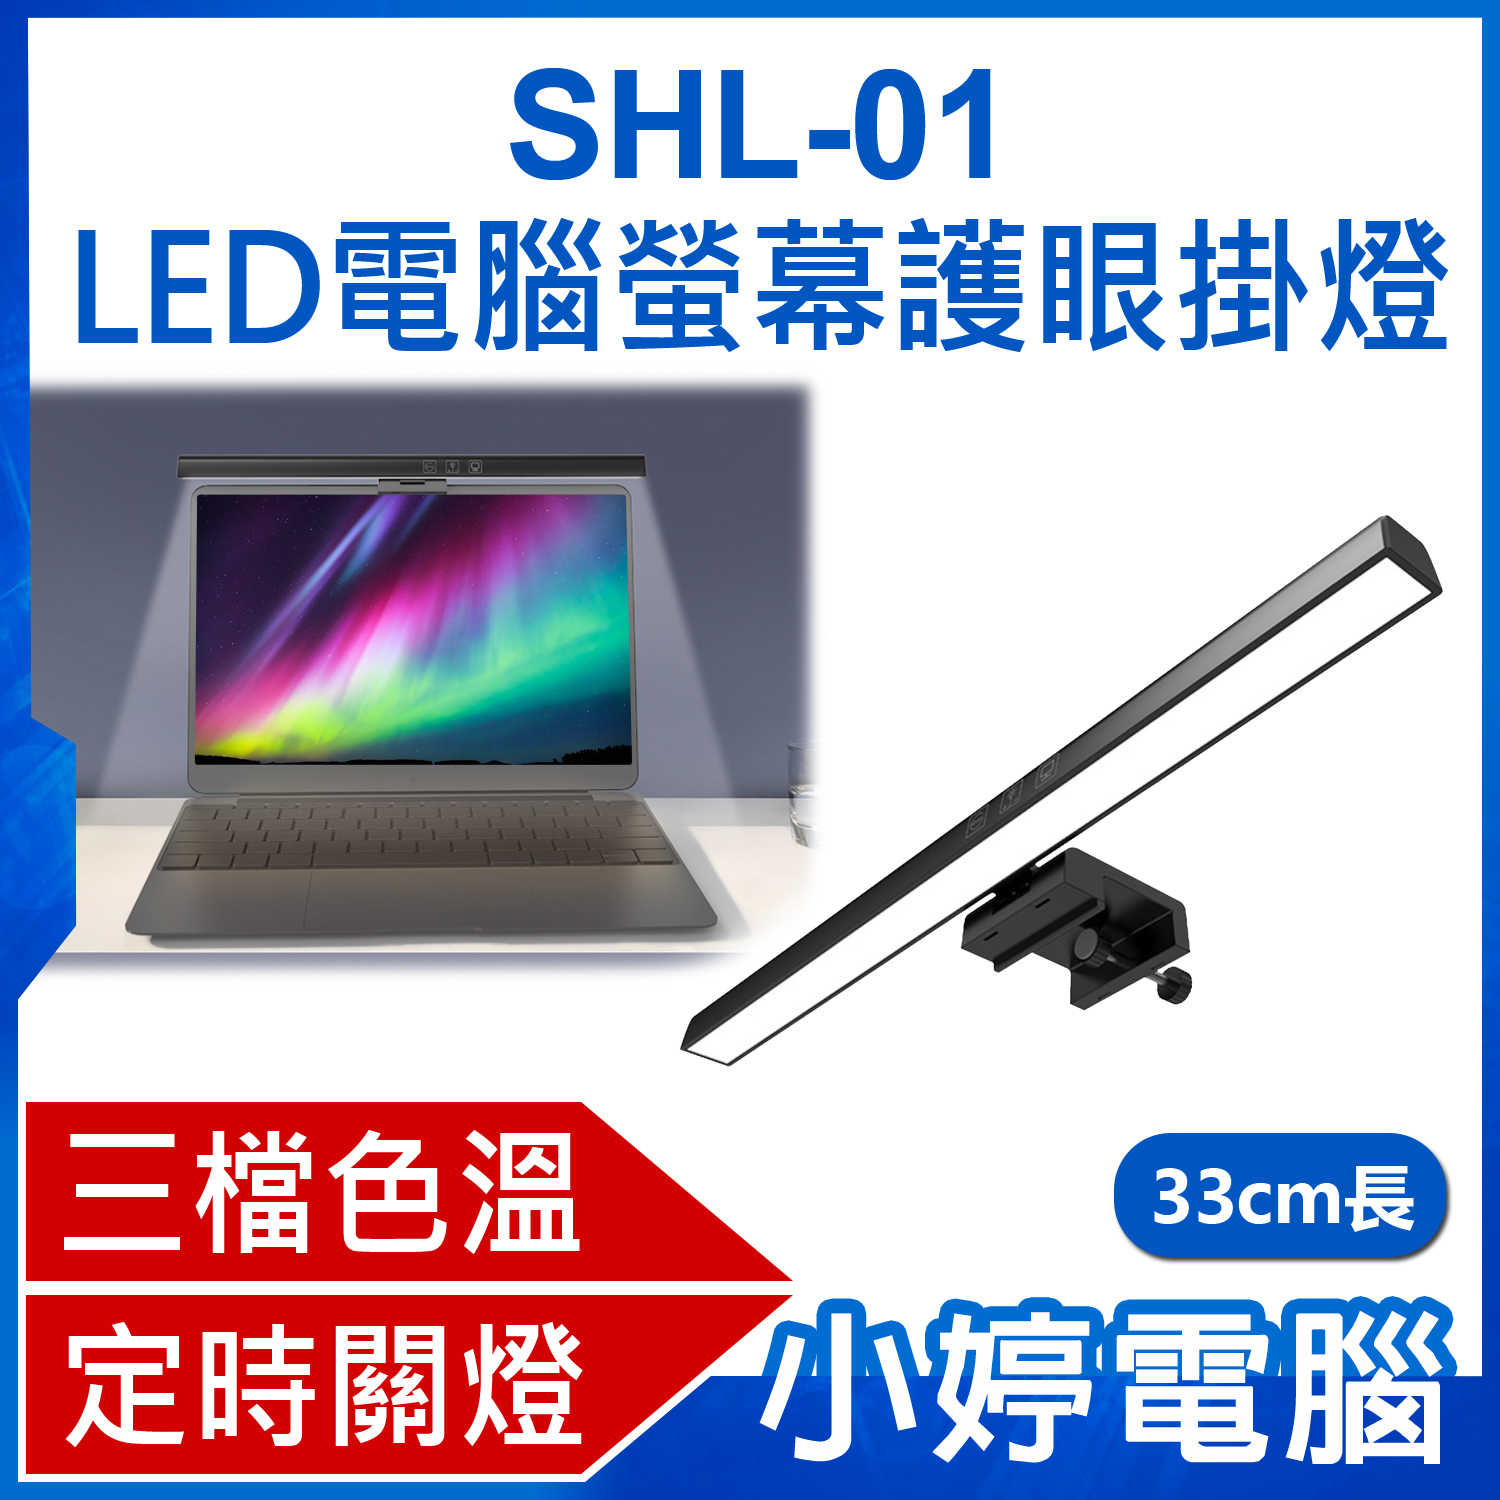 【小婷電腦】SHL-01 LED電腦螢幕護眼掛燈 33cm長 顯示器筆電掛燈/檯燈 三檔色溫 USB供電